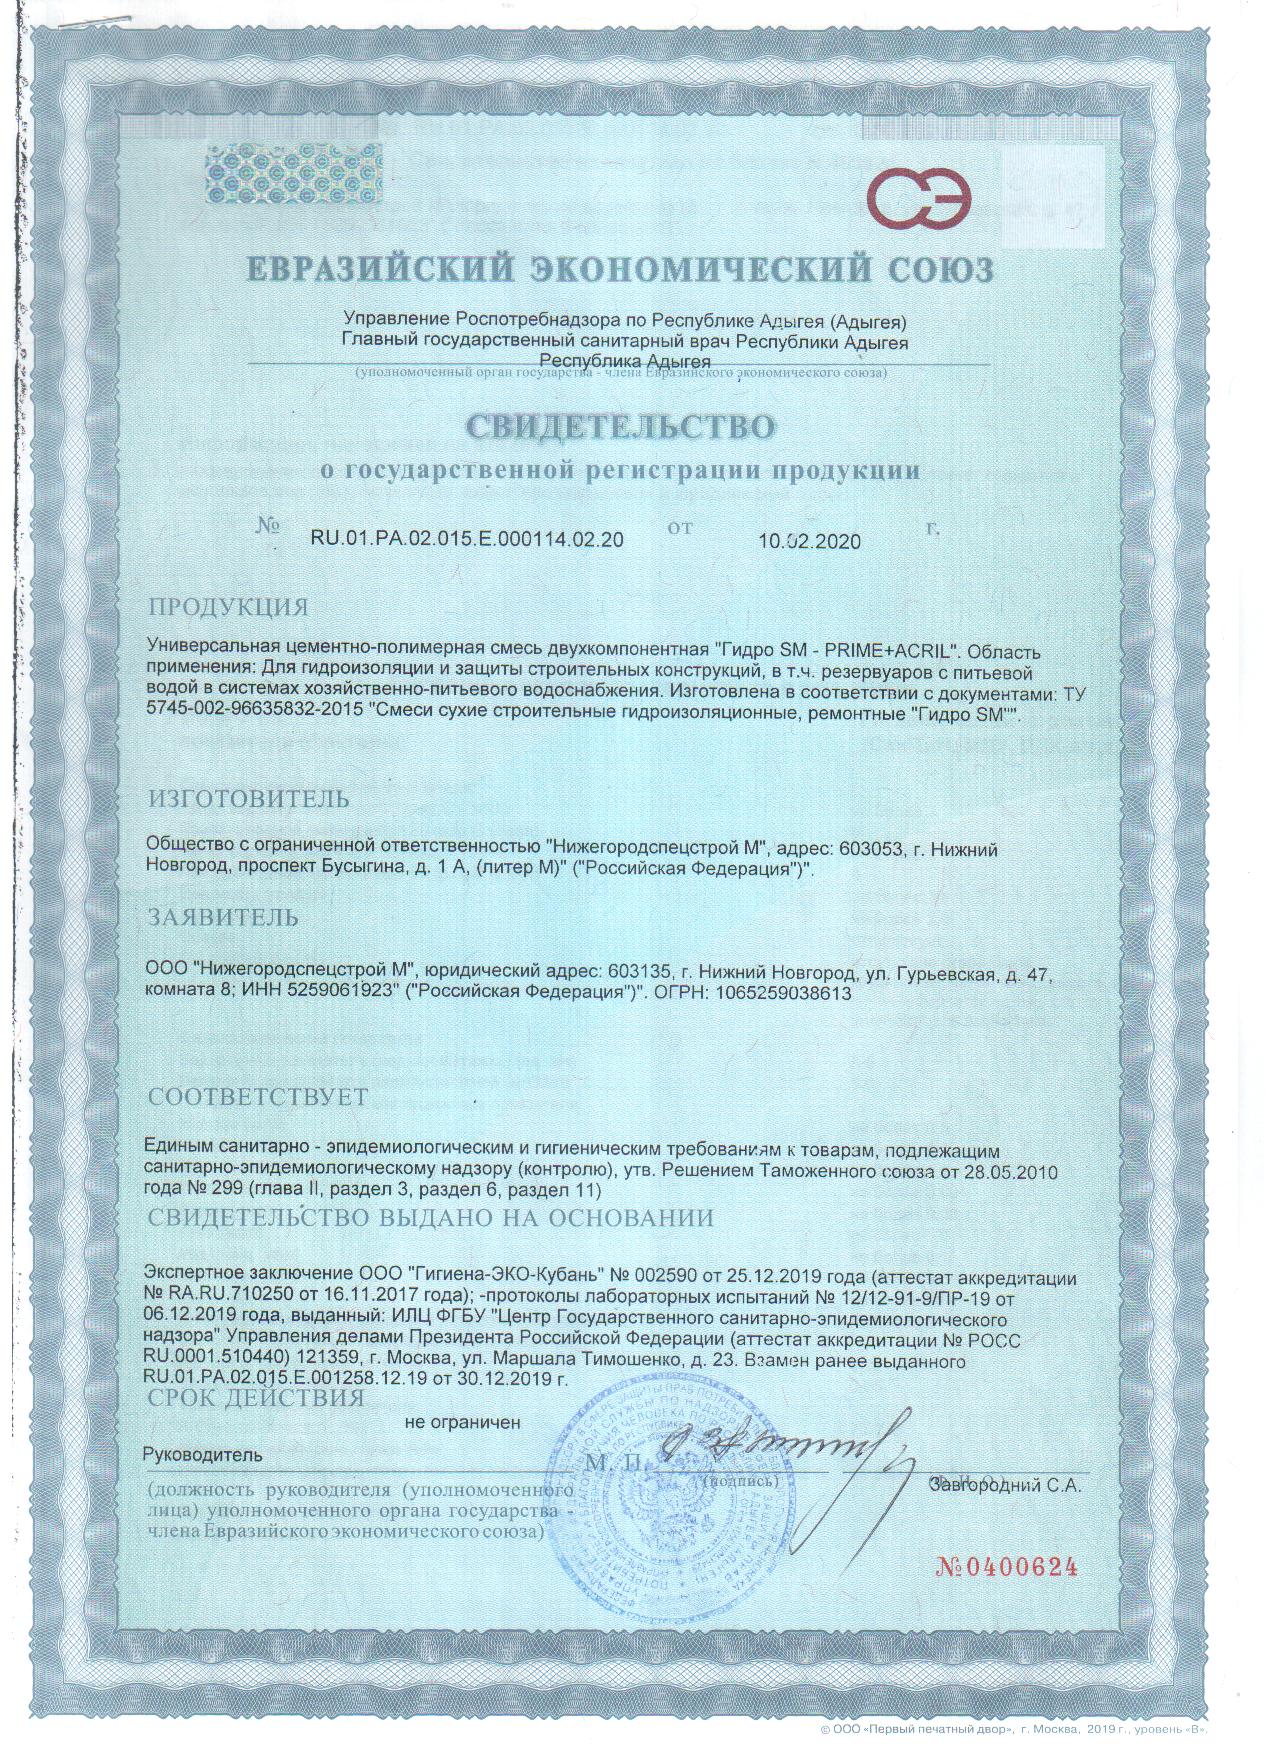 Сертификат СГР от 10.02.2020 г.